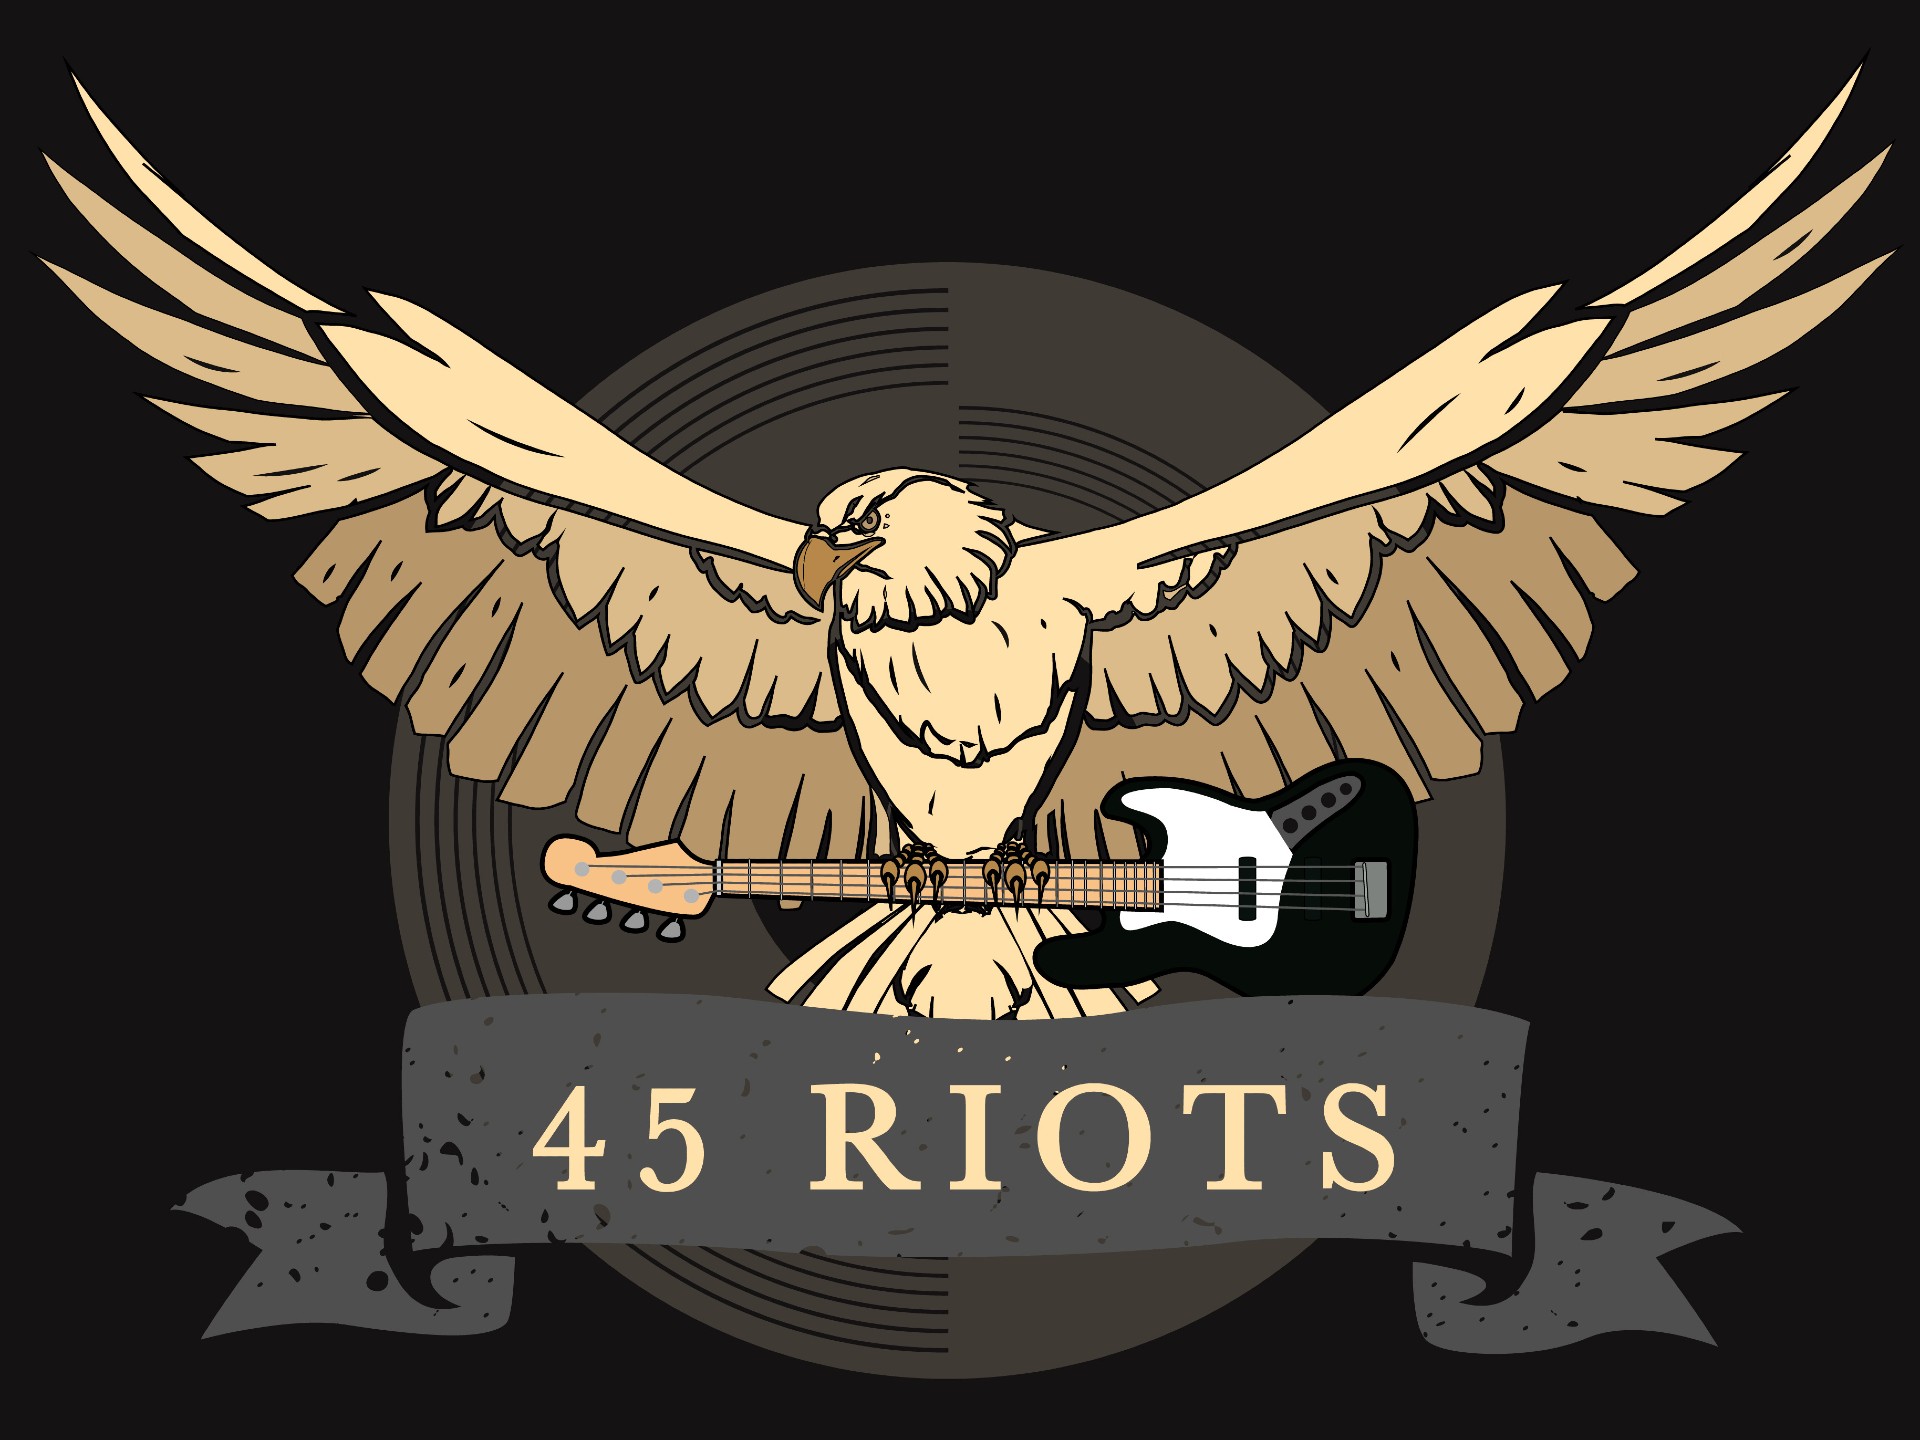 45 Riots